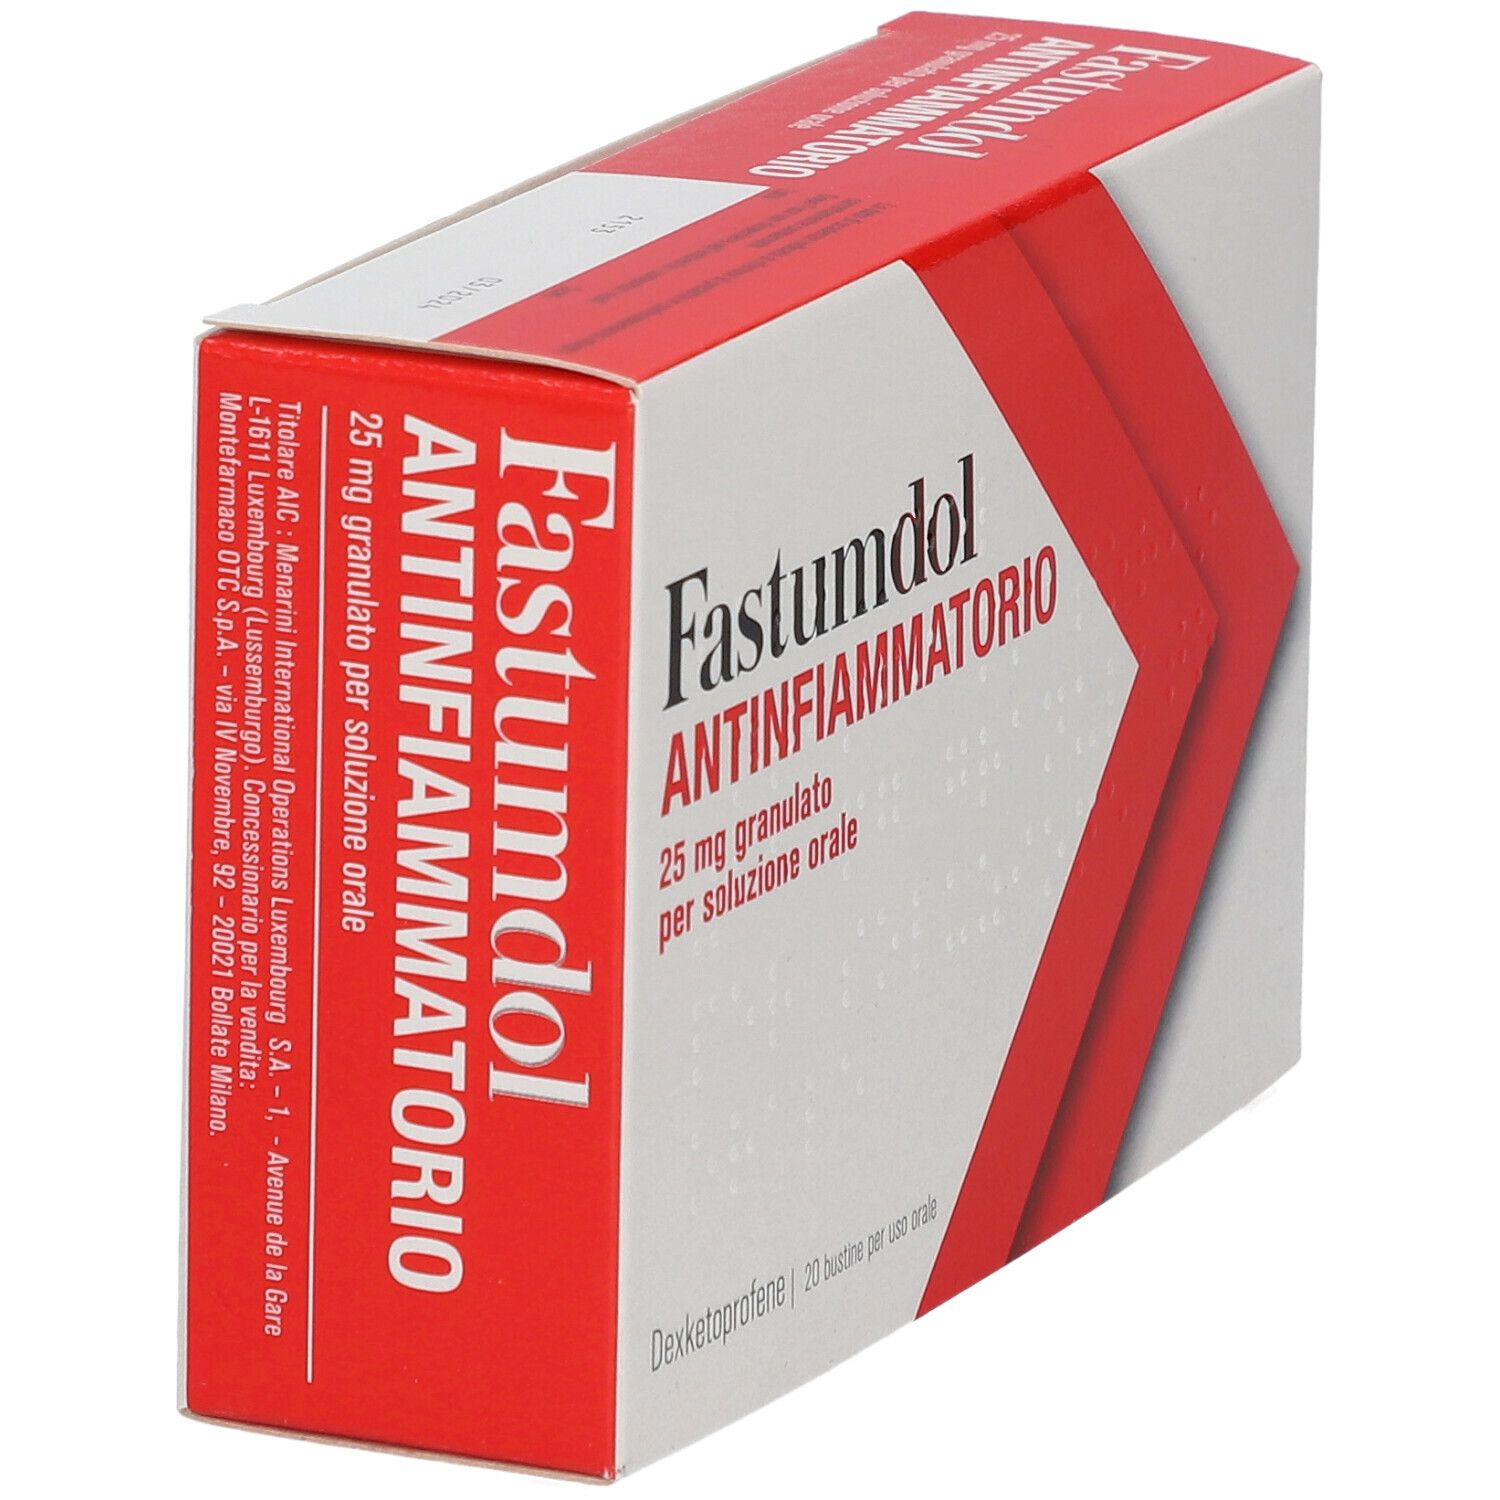 Fastumdol Antinfiammatorio bustine